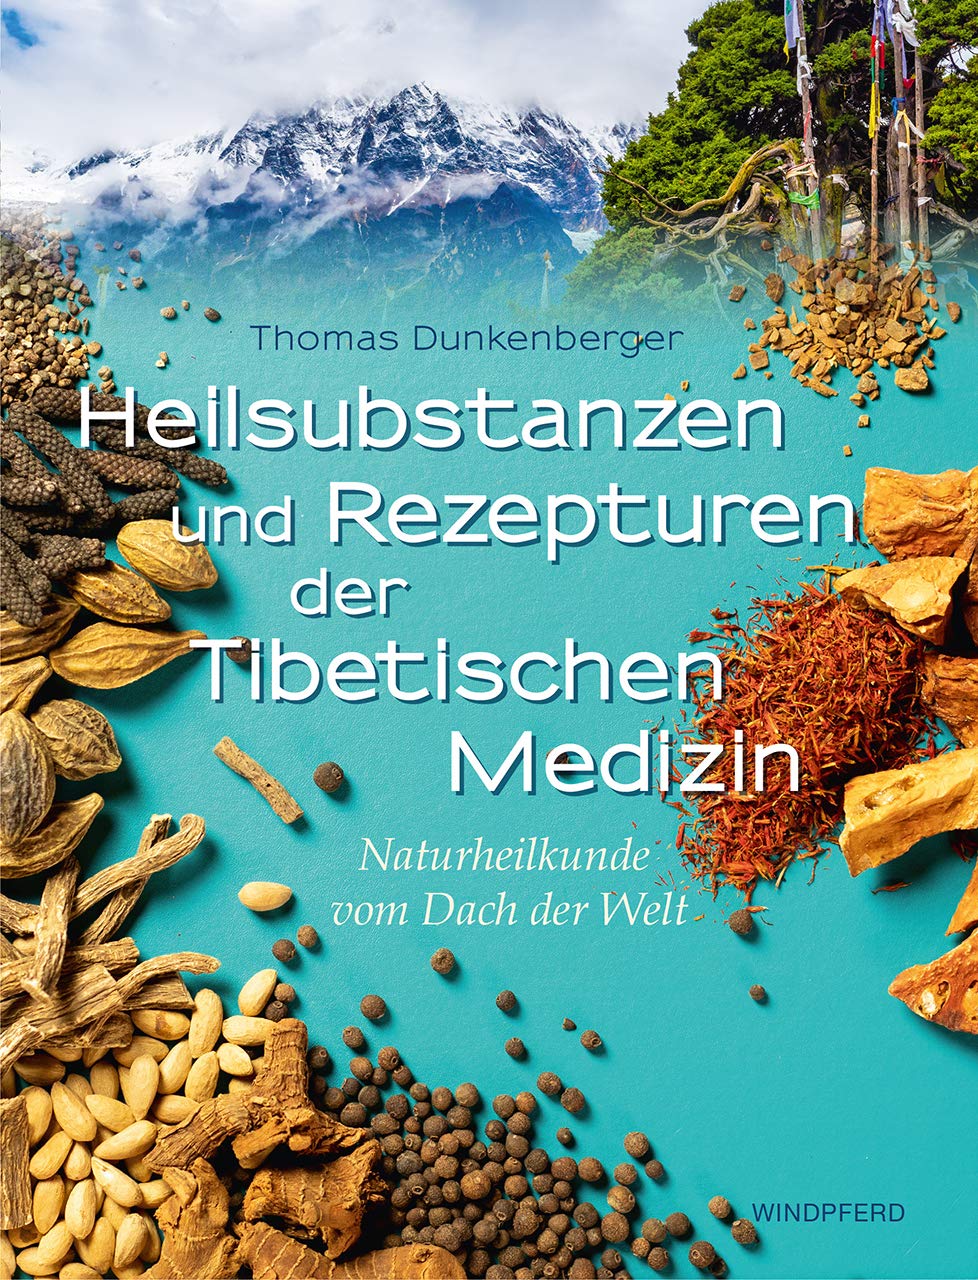 Buch: Heilsubstanzen und Rezepturen der Tibetischen Medizin - Naturheilkunde vom Dach der Welt (Amazon)